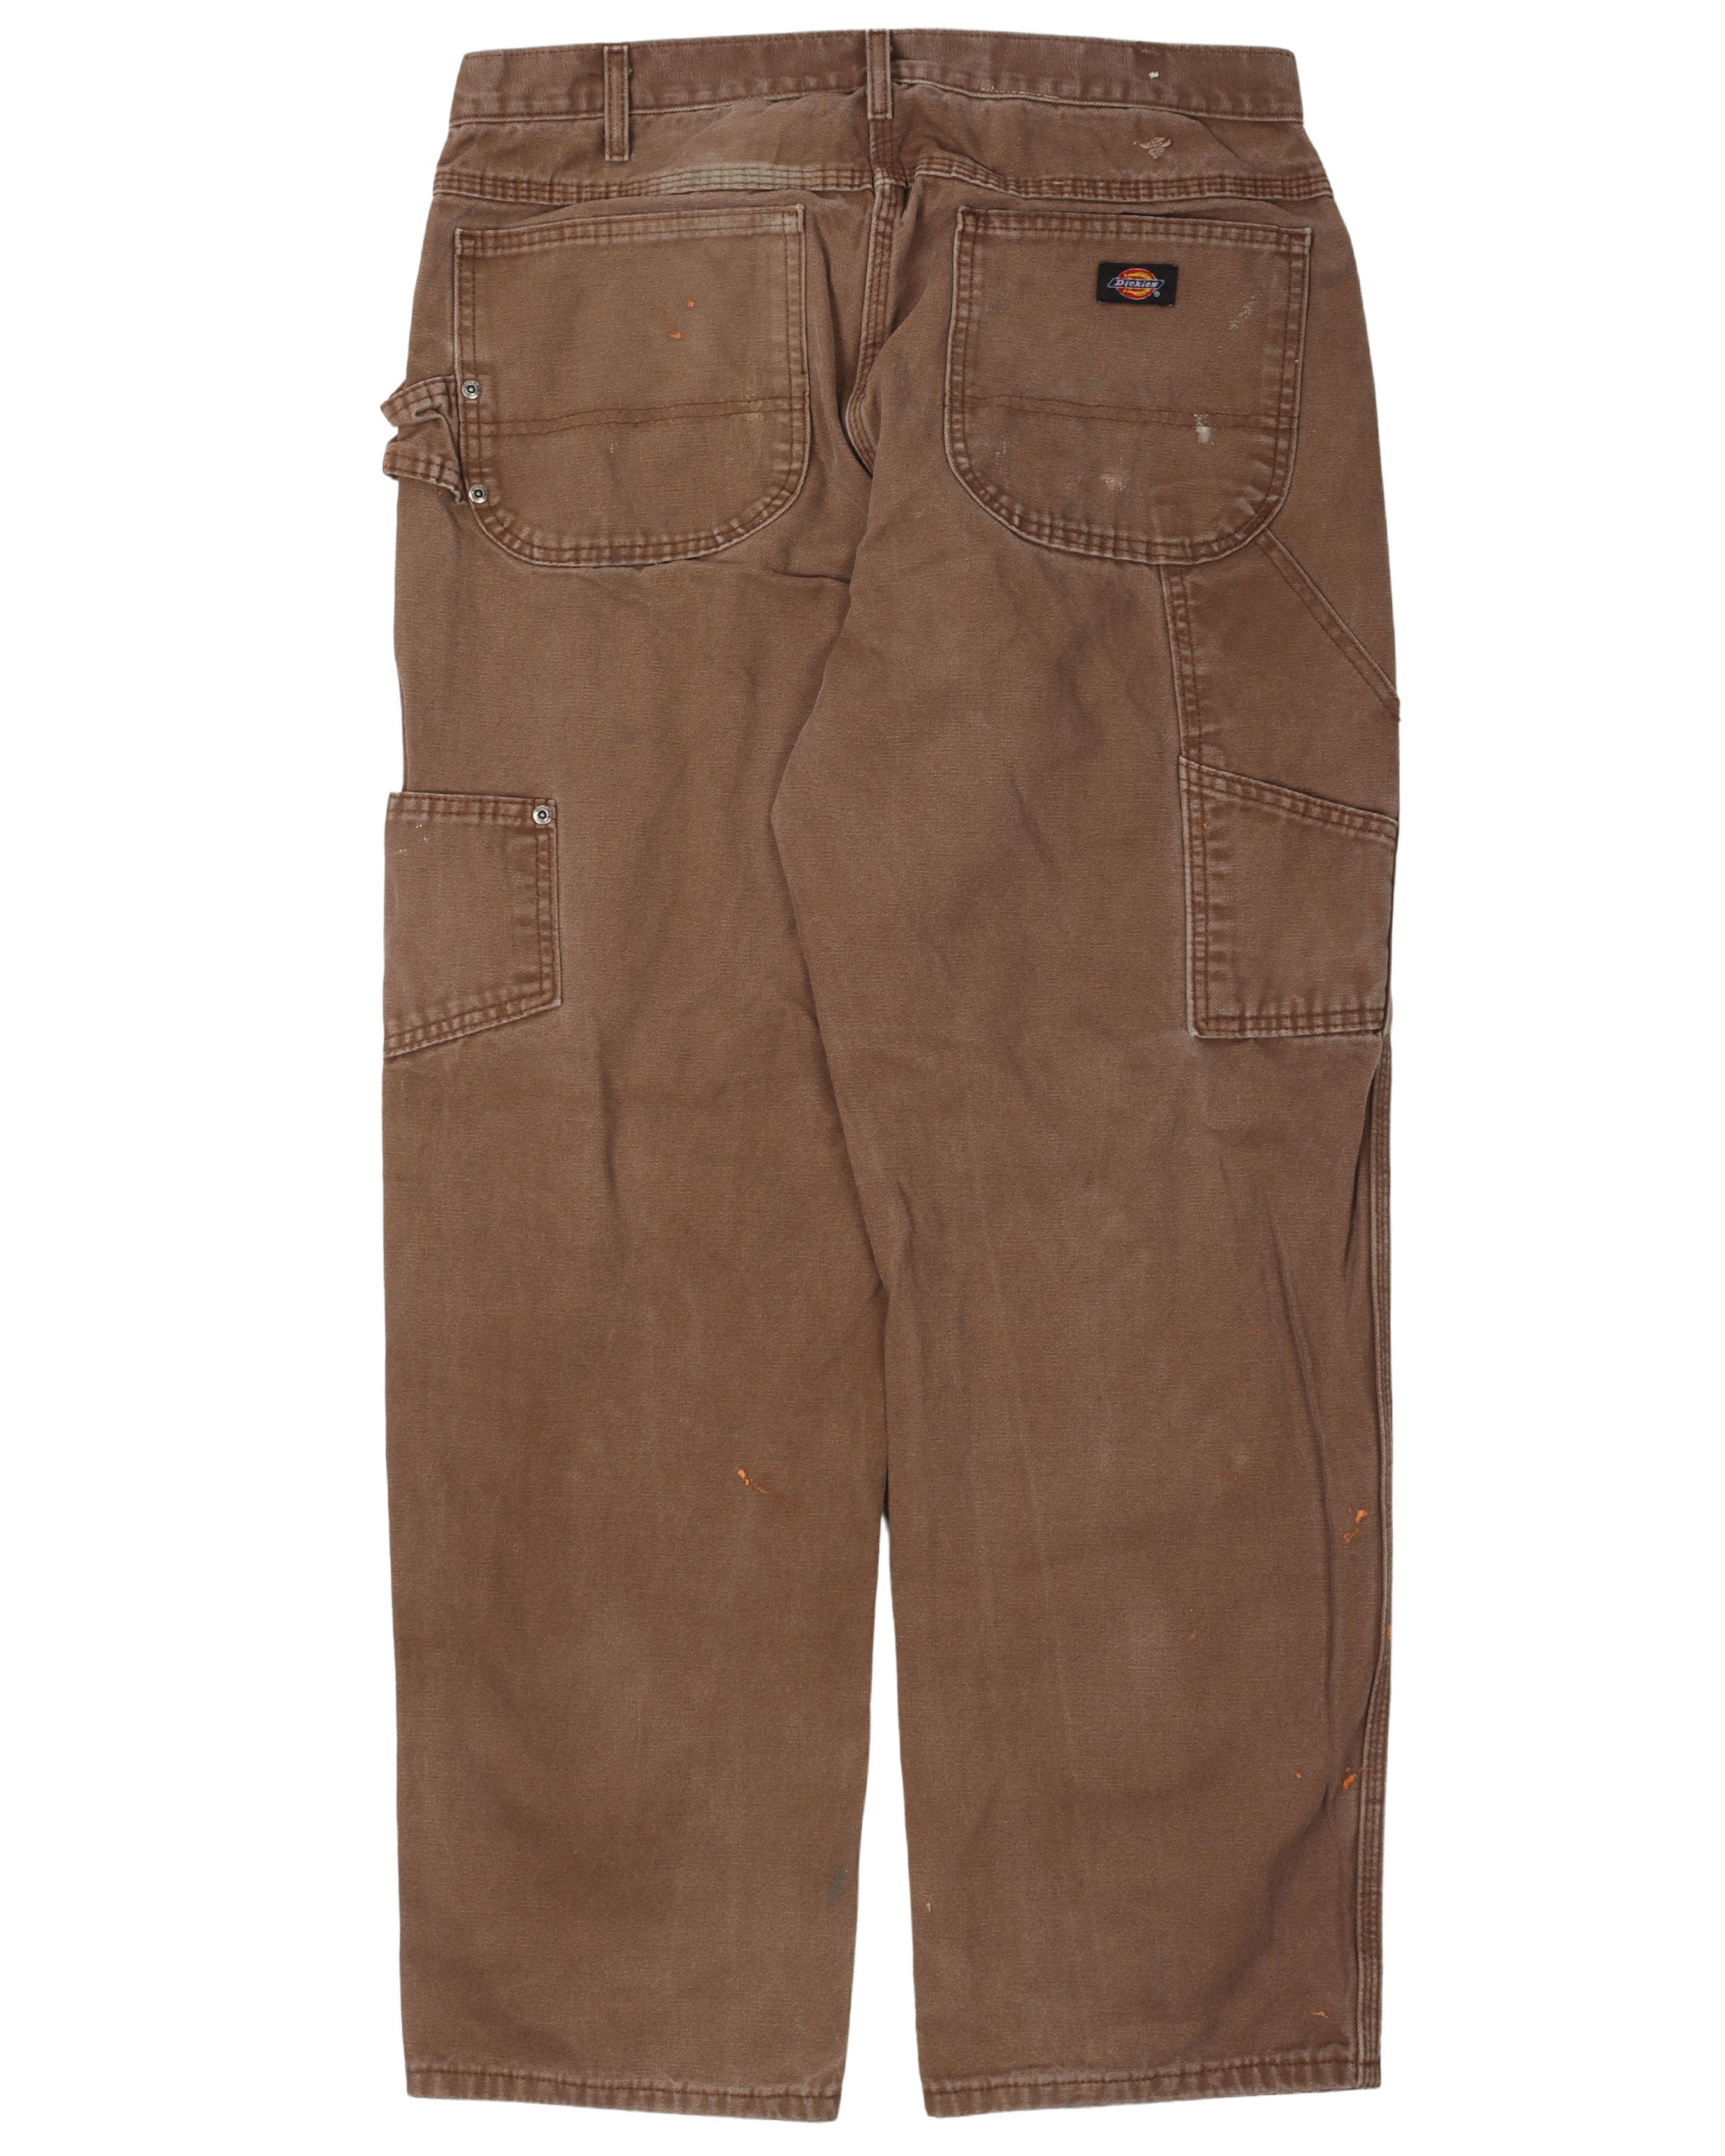 Vintage Dickies Pants Mens 30 x 30 Brown Work Wear Carpenters – Proper  Vintage